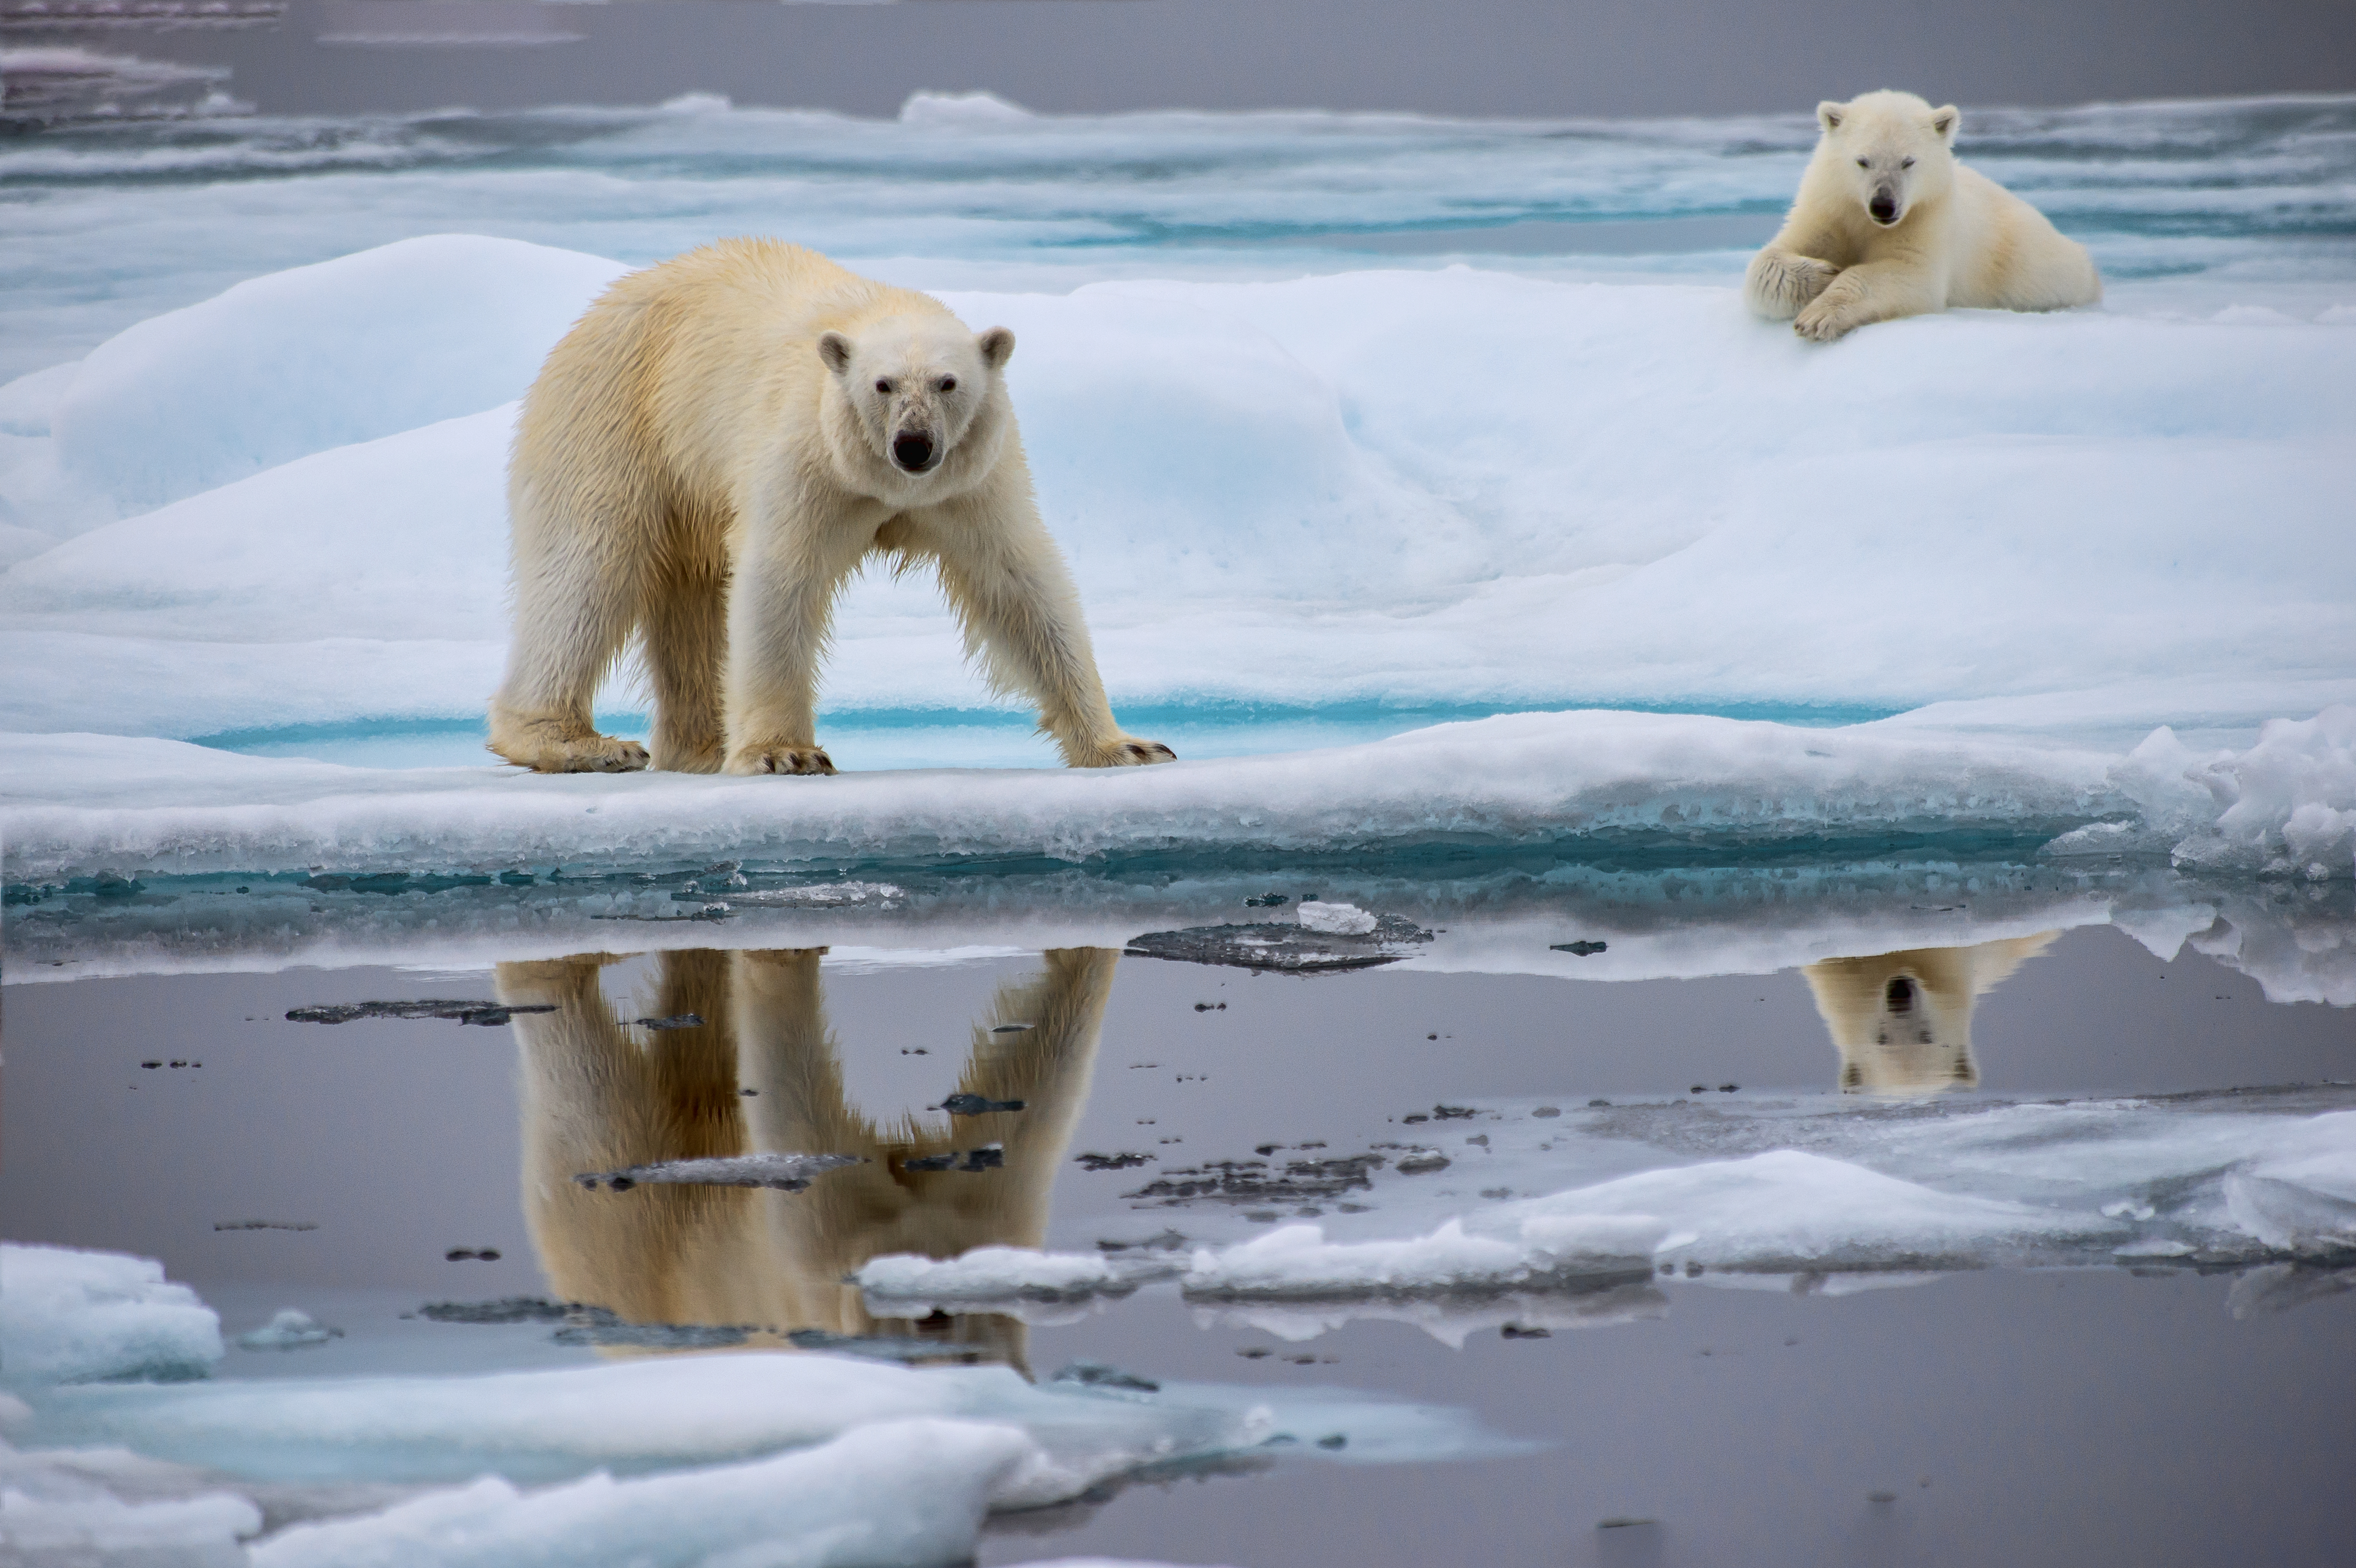 Los osos polares enfrentan dificultades para sobrevivr debido al descongelamiento de su hábitat. (Foto Prensa Libre: Shutterstock)